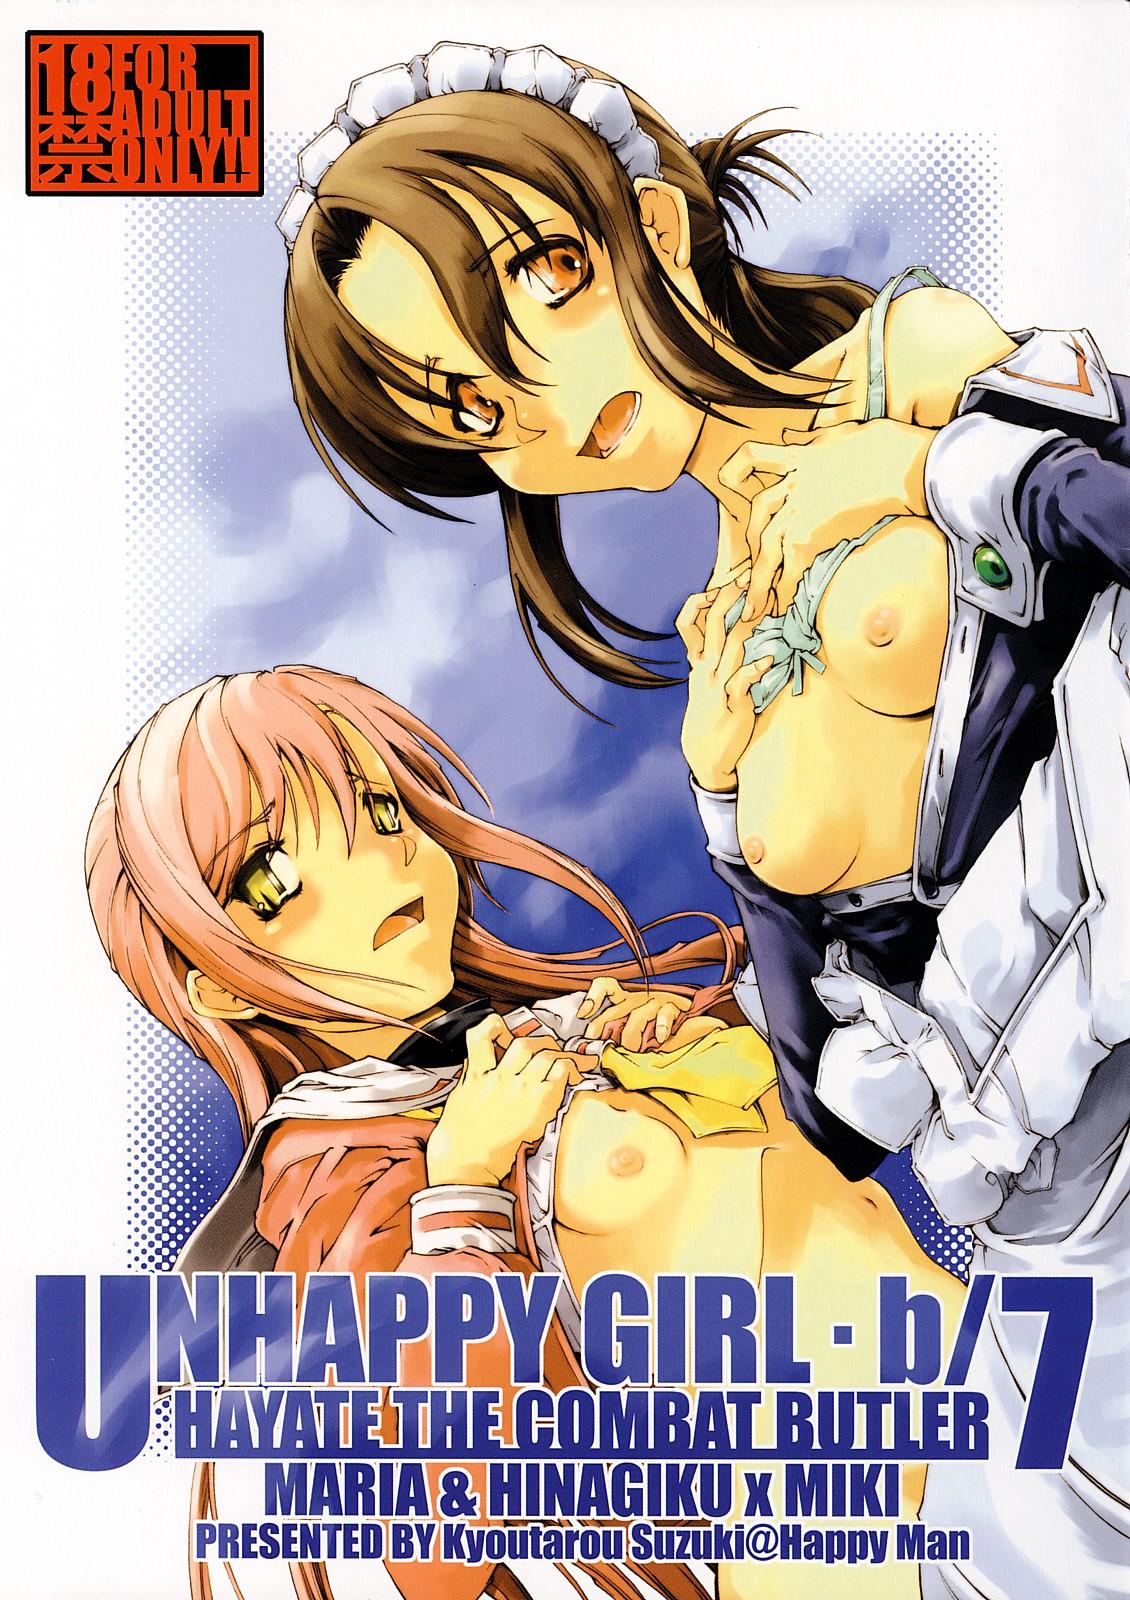 Unhappy Girl b/7 0